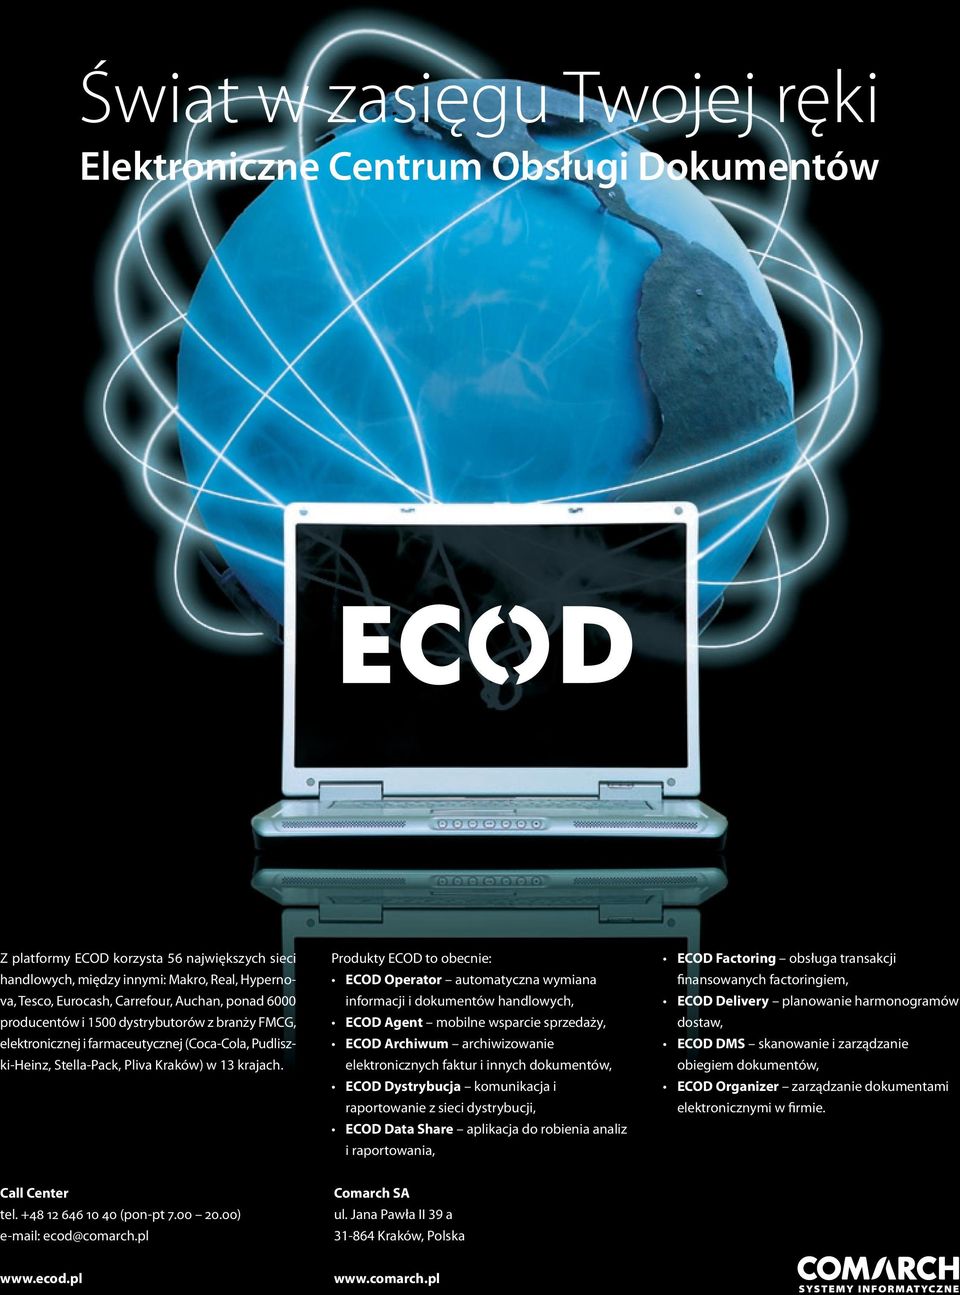 Produkty ECOD to obecnie: ECOD Operator automatyczna wymiana informacji i dokumentów handlowych, ECOD Agent mobilne wsparcie sprzedaży, ECOD Archiwum archiwizowanie elektronicznych faktur i innych